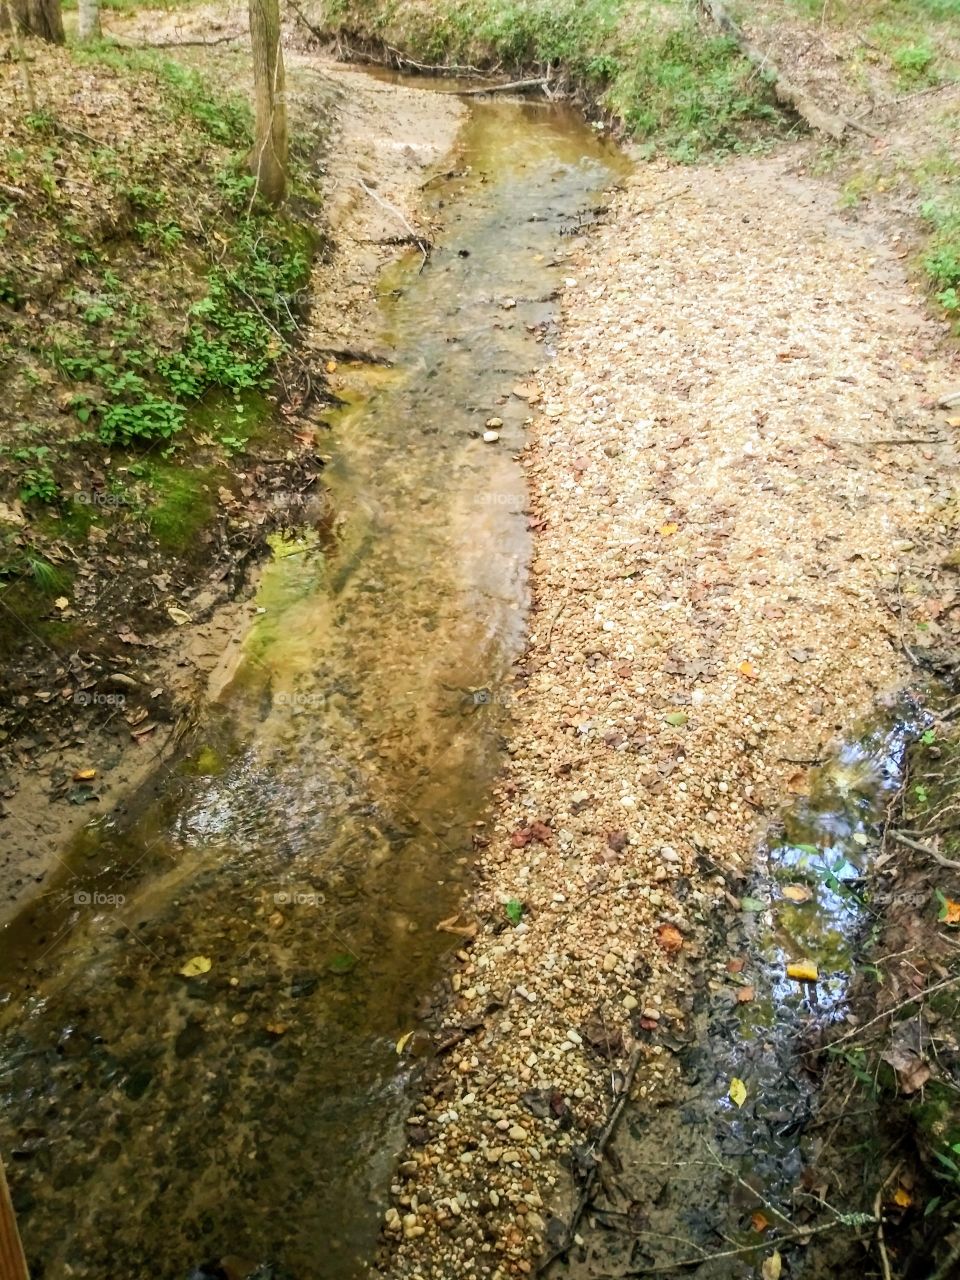 A babbling brook